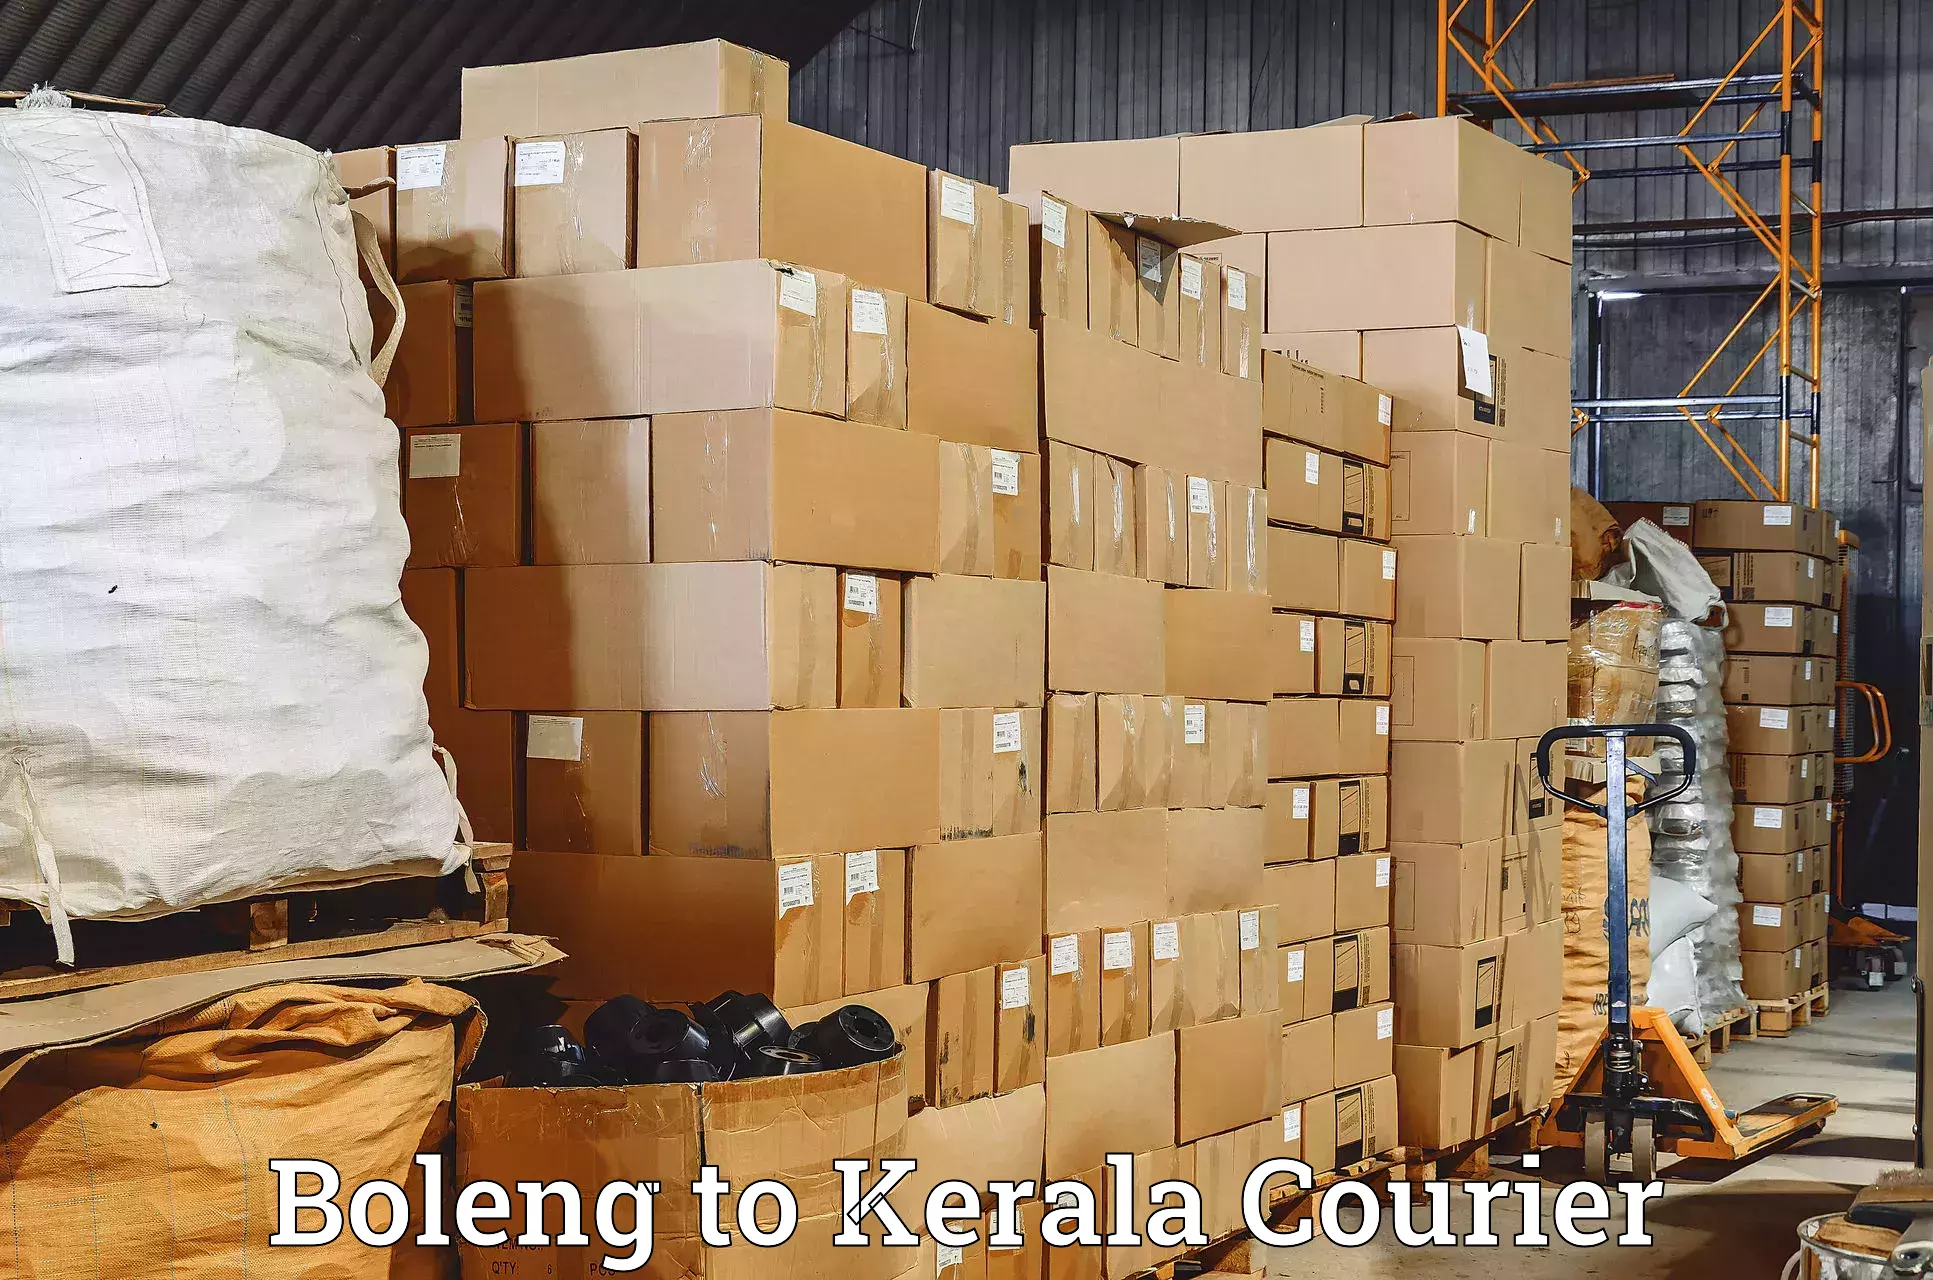 Ground shipping in Boleng to Kerala